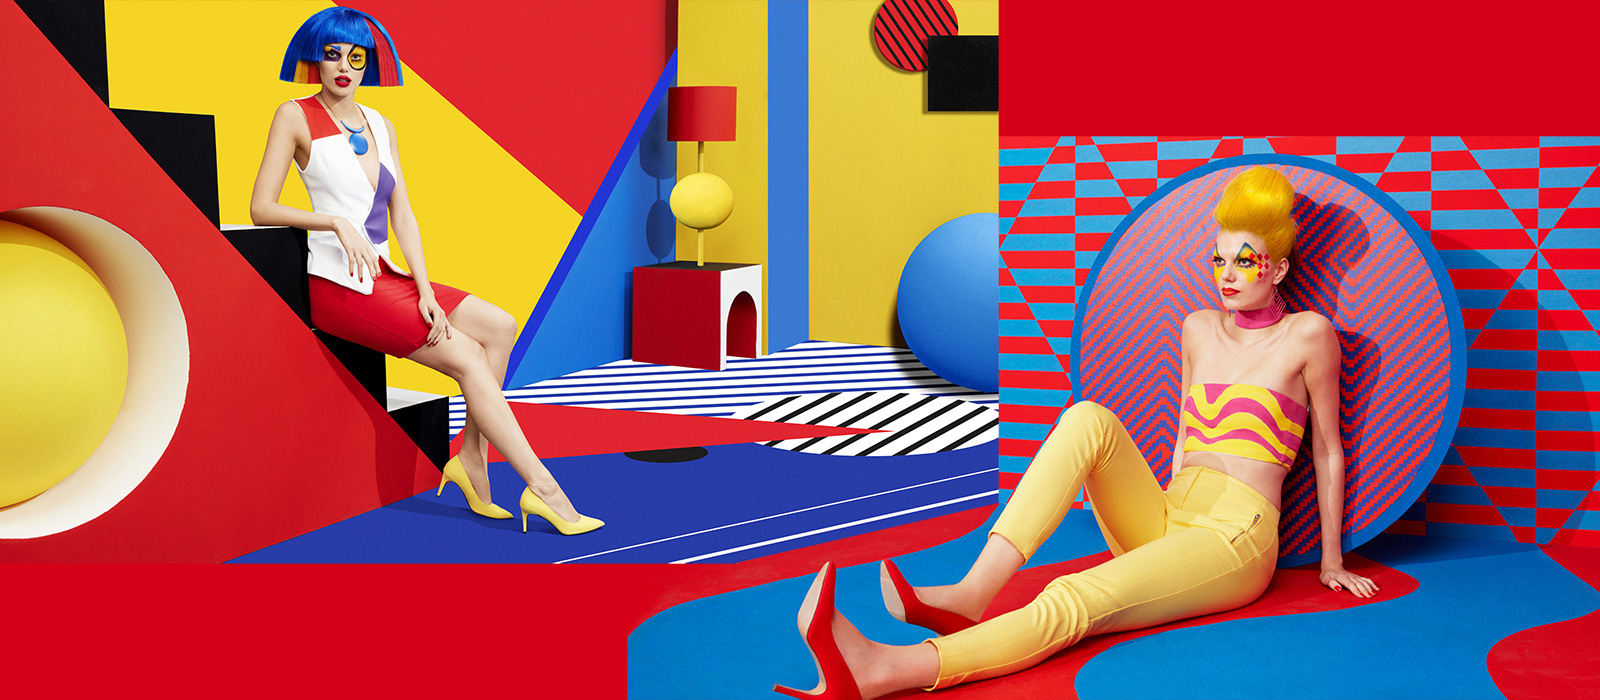 Рекламная кампания Aïzone - сочетание декорированных плоскостей, объемных элементов и поп-арта